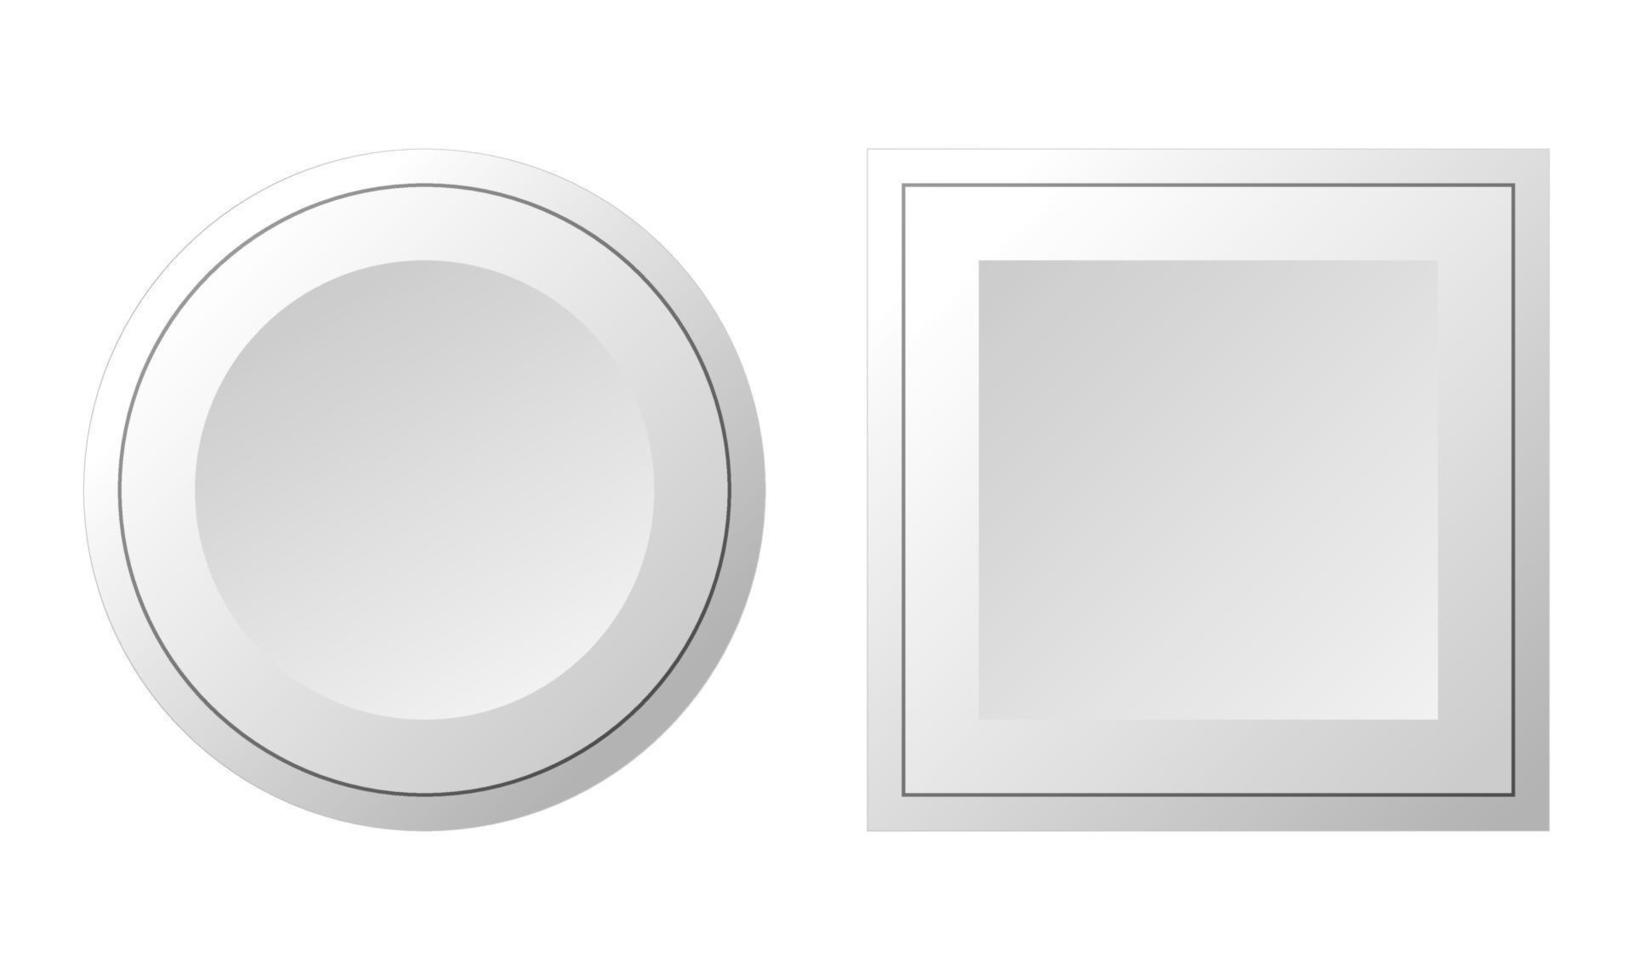 boutons de conception néomorphique de vecteur 3d. cercle de formes géométriques, carré sur fond blanc. vecteur.